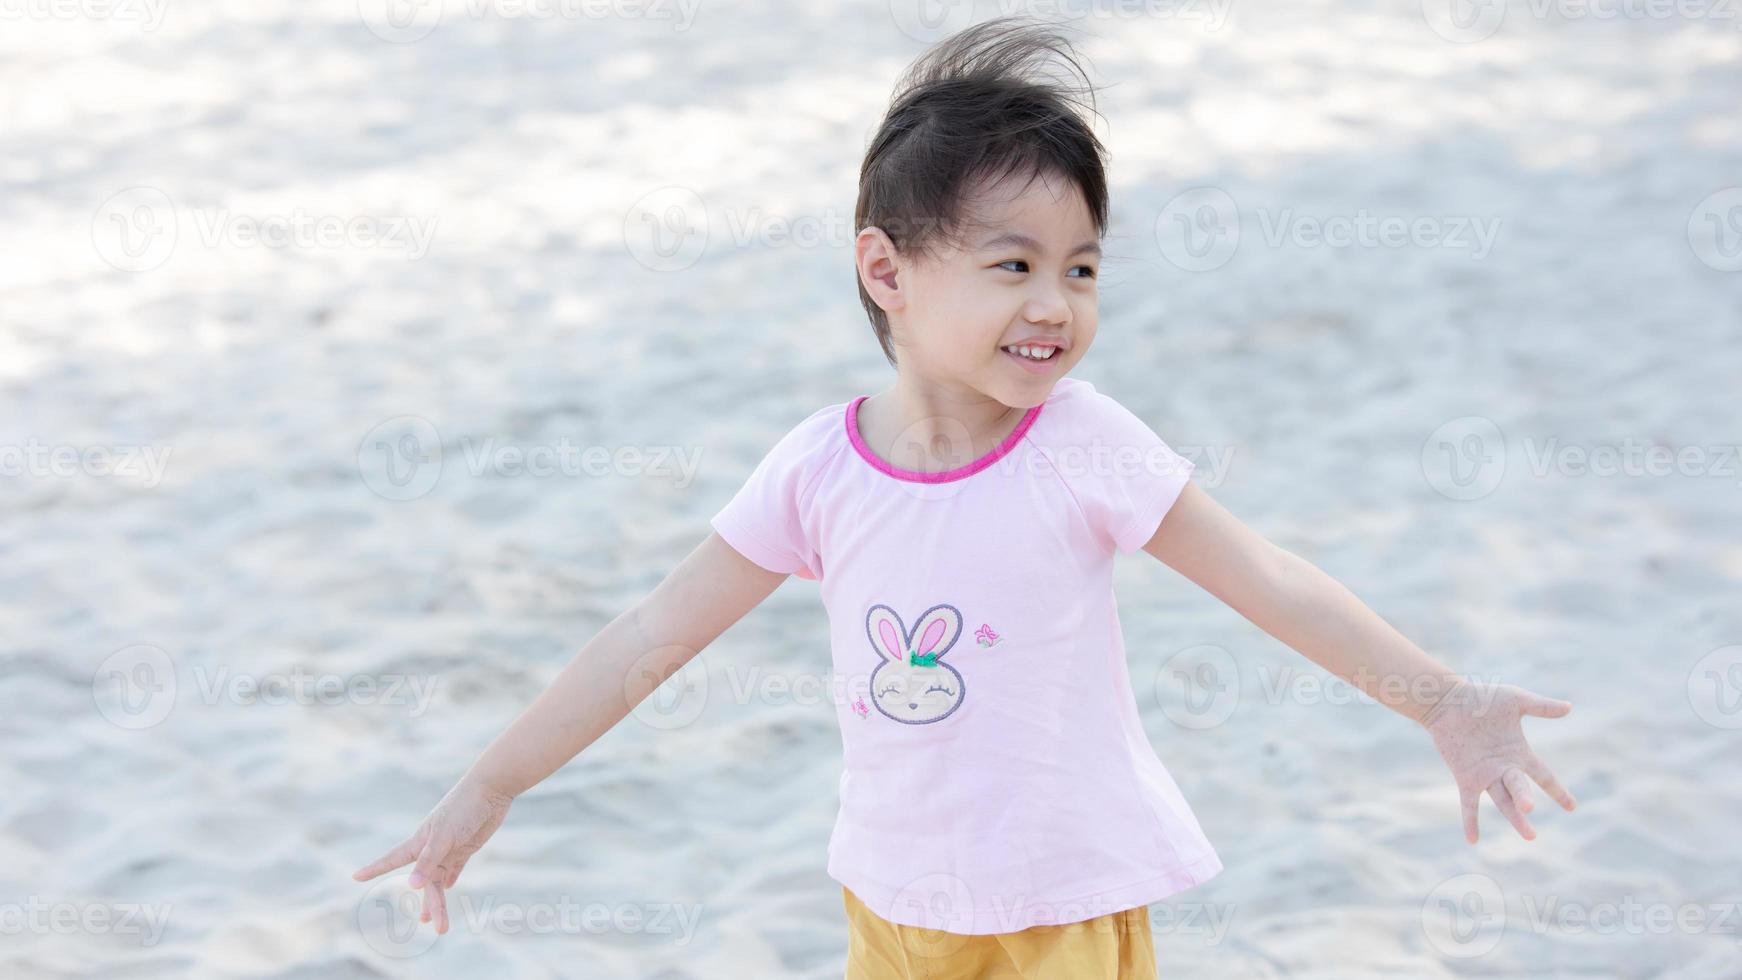 positiva encantadora niña asiática de 4 años de edad, pequeña niña  preescolar con adorable cabello de coletas sonriendo mirando a la cámara.  13281547 Foto de stock en Vecteezy